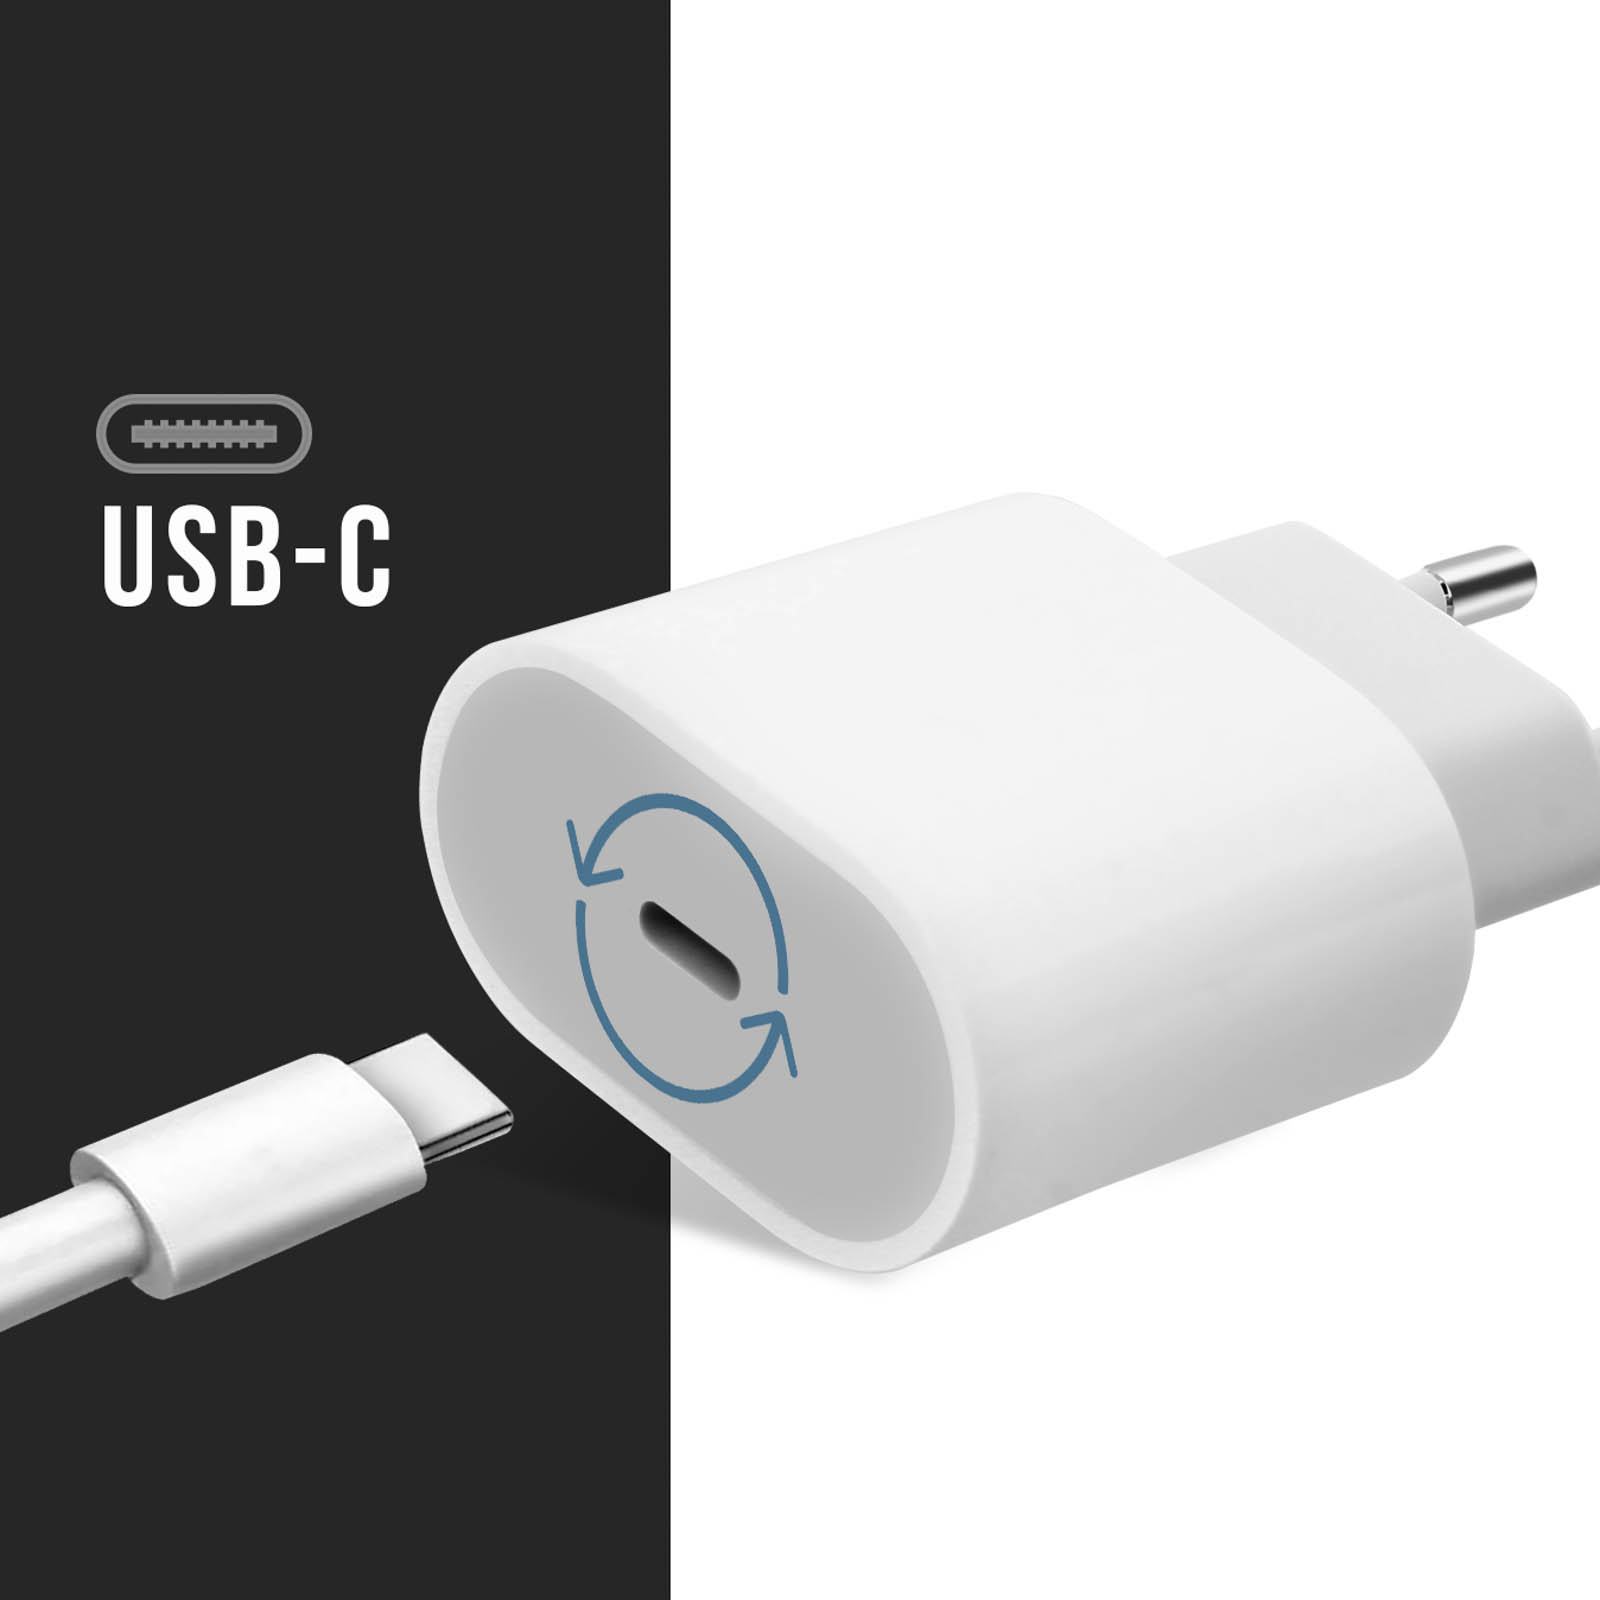 Prise secteur USB-C 20W qualité d'origine Apple